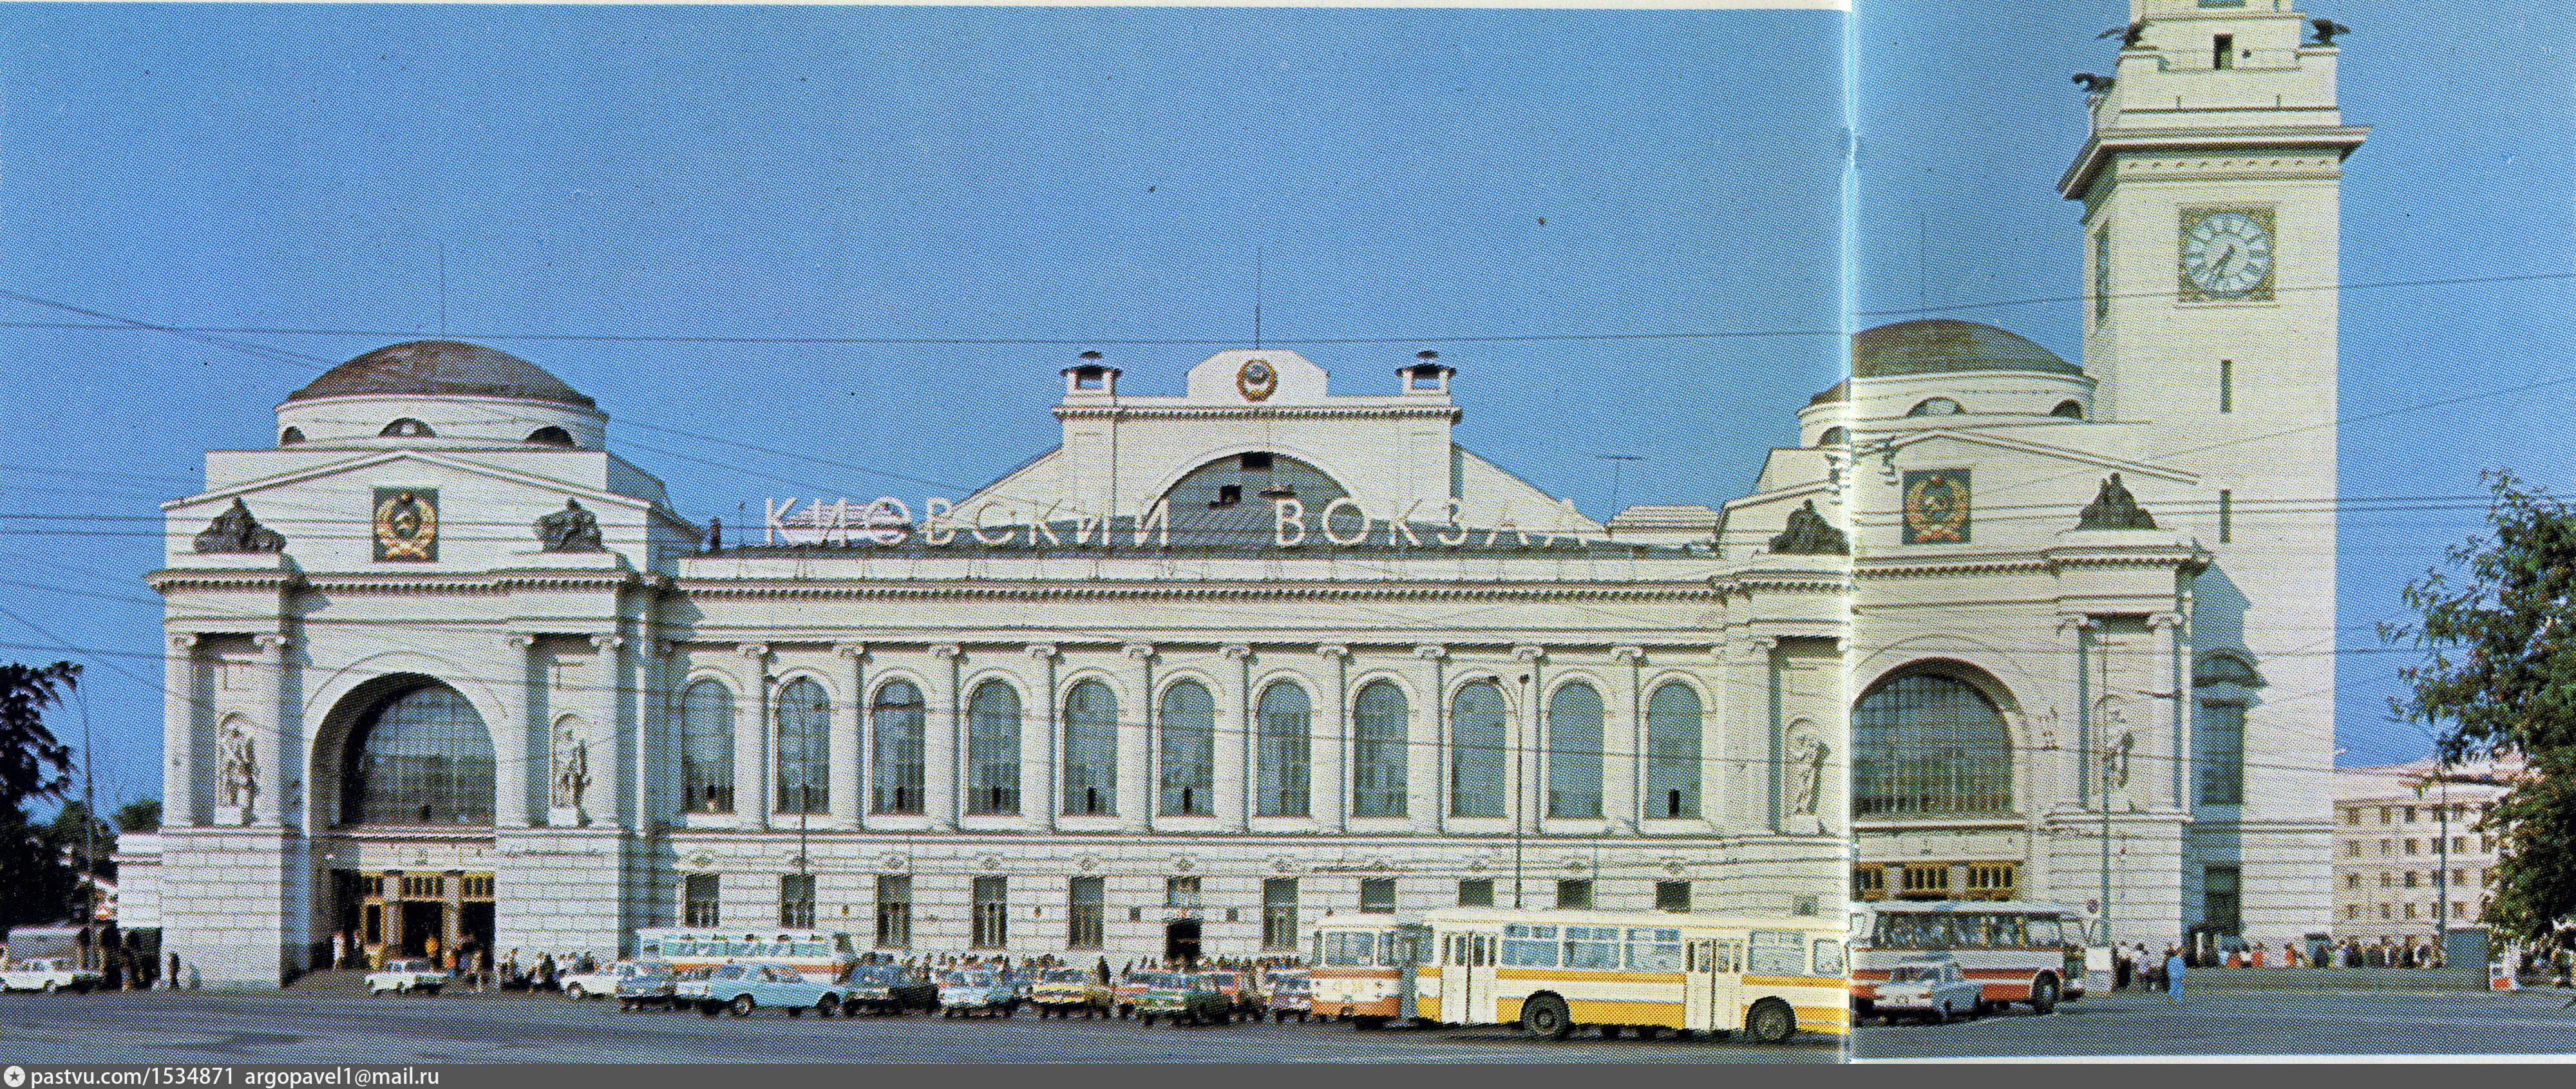 Вокзал реставрация